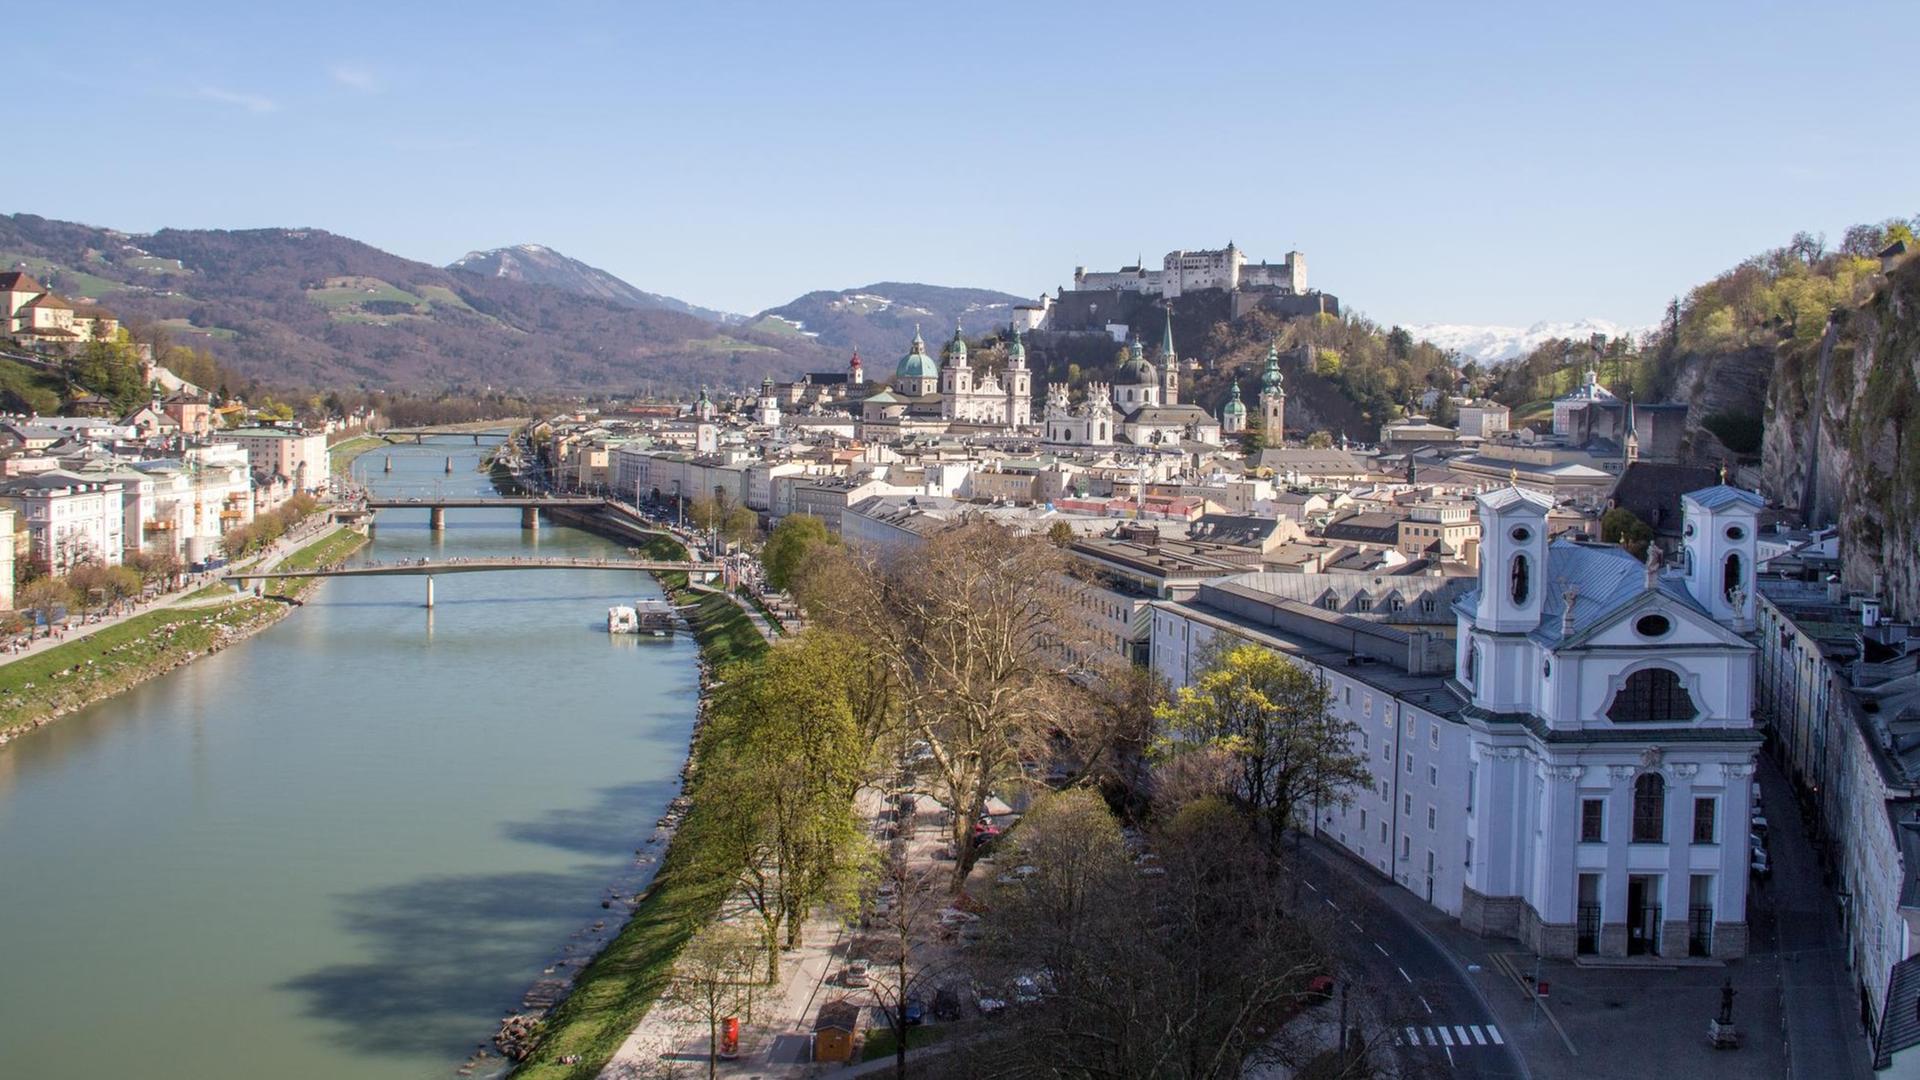 Blick auf die historische Altstadt von Salzburg mit Festung Hohensalzburg am Fluss Salzach